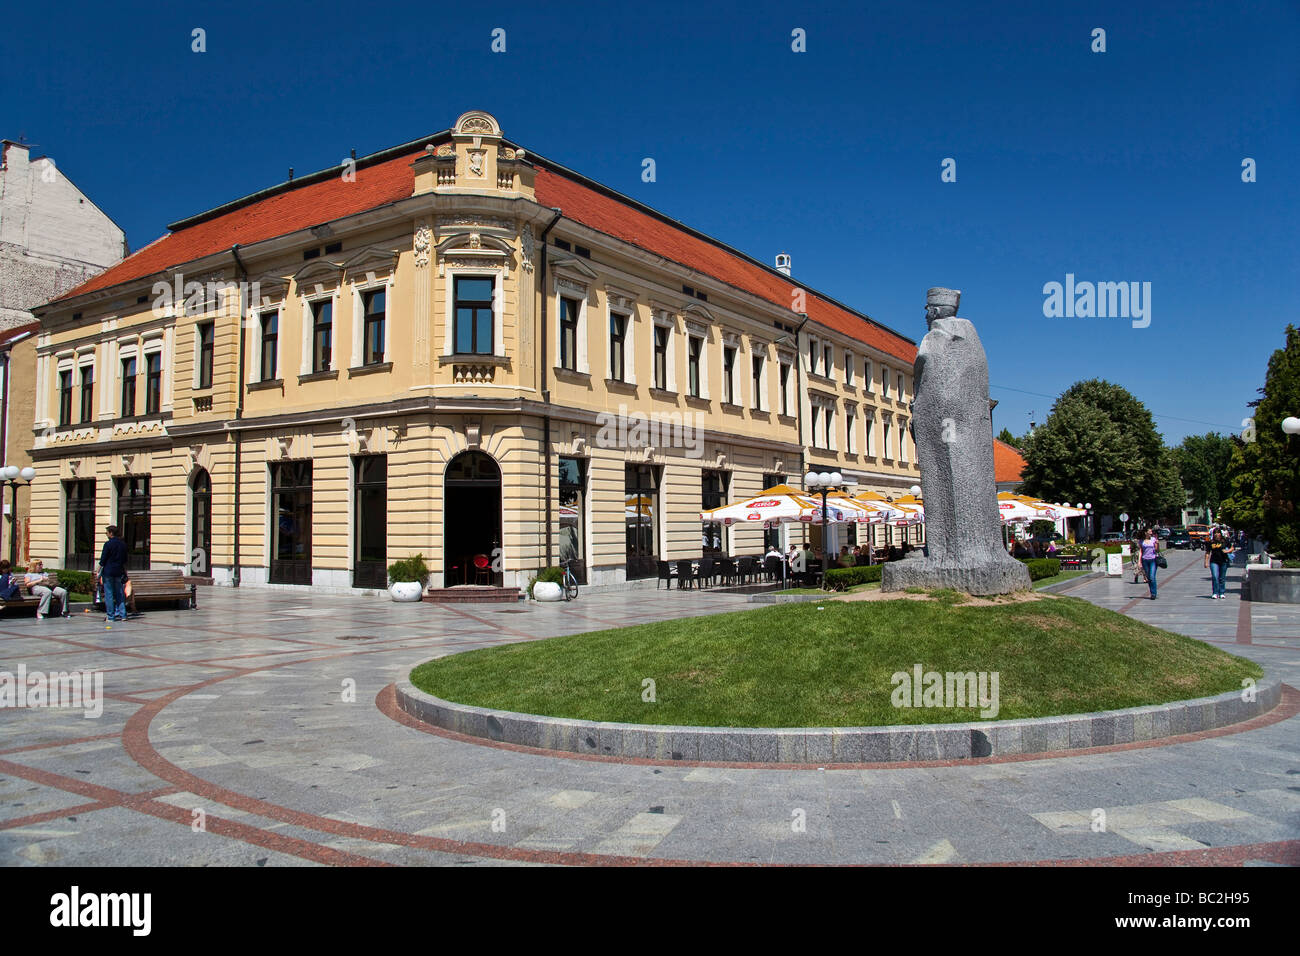 Square of Zivojin Misic in the town of Valjevo Serbia Stock Photo